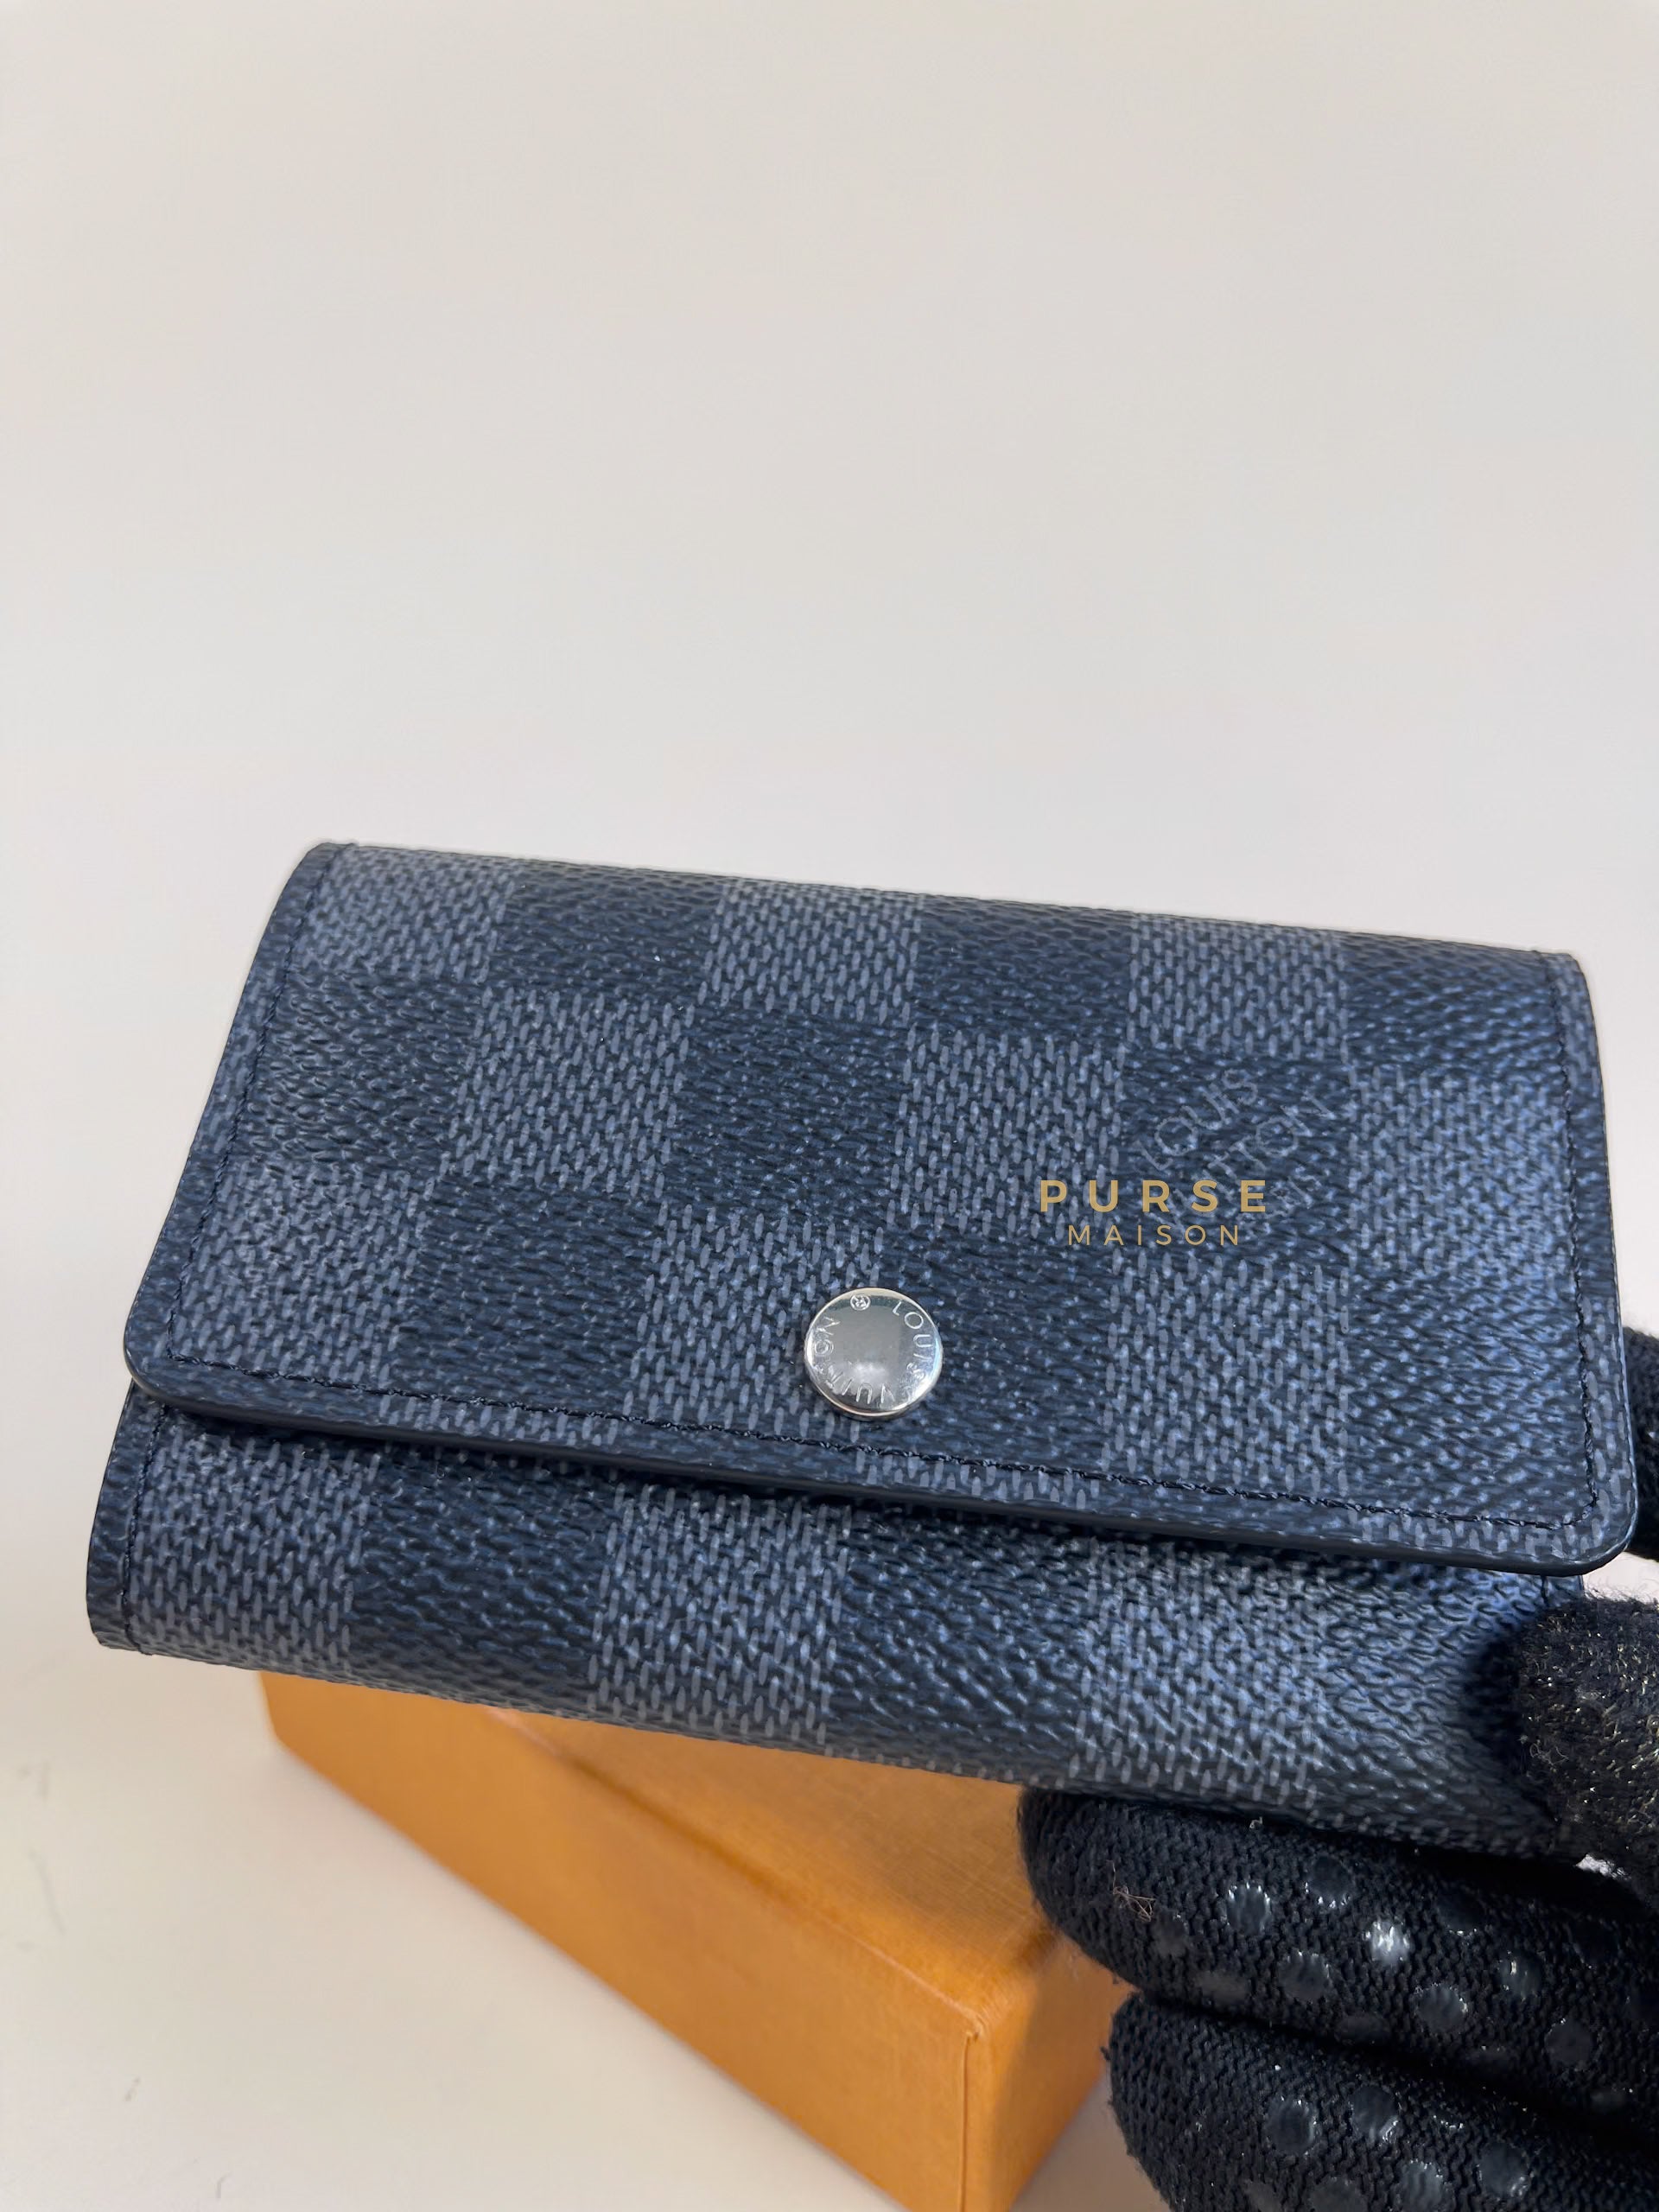 Louis Vuitton 6 Keyholder Wallet in Damier Graphite Canvas (Date Code: CT1178) | Purse Maison Luxury Bags Shop